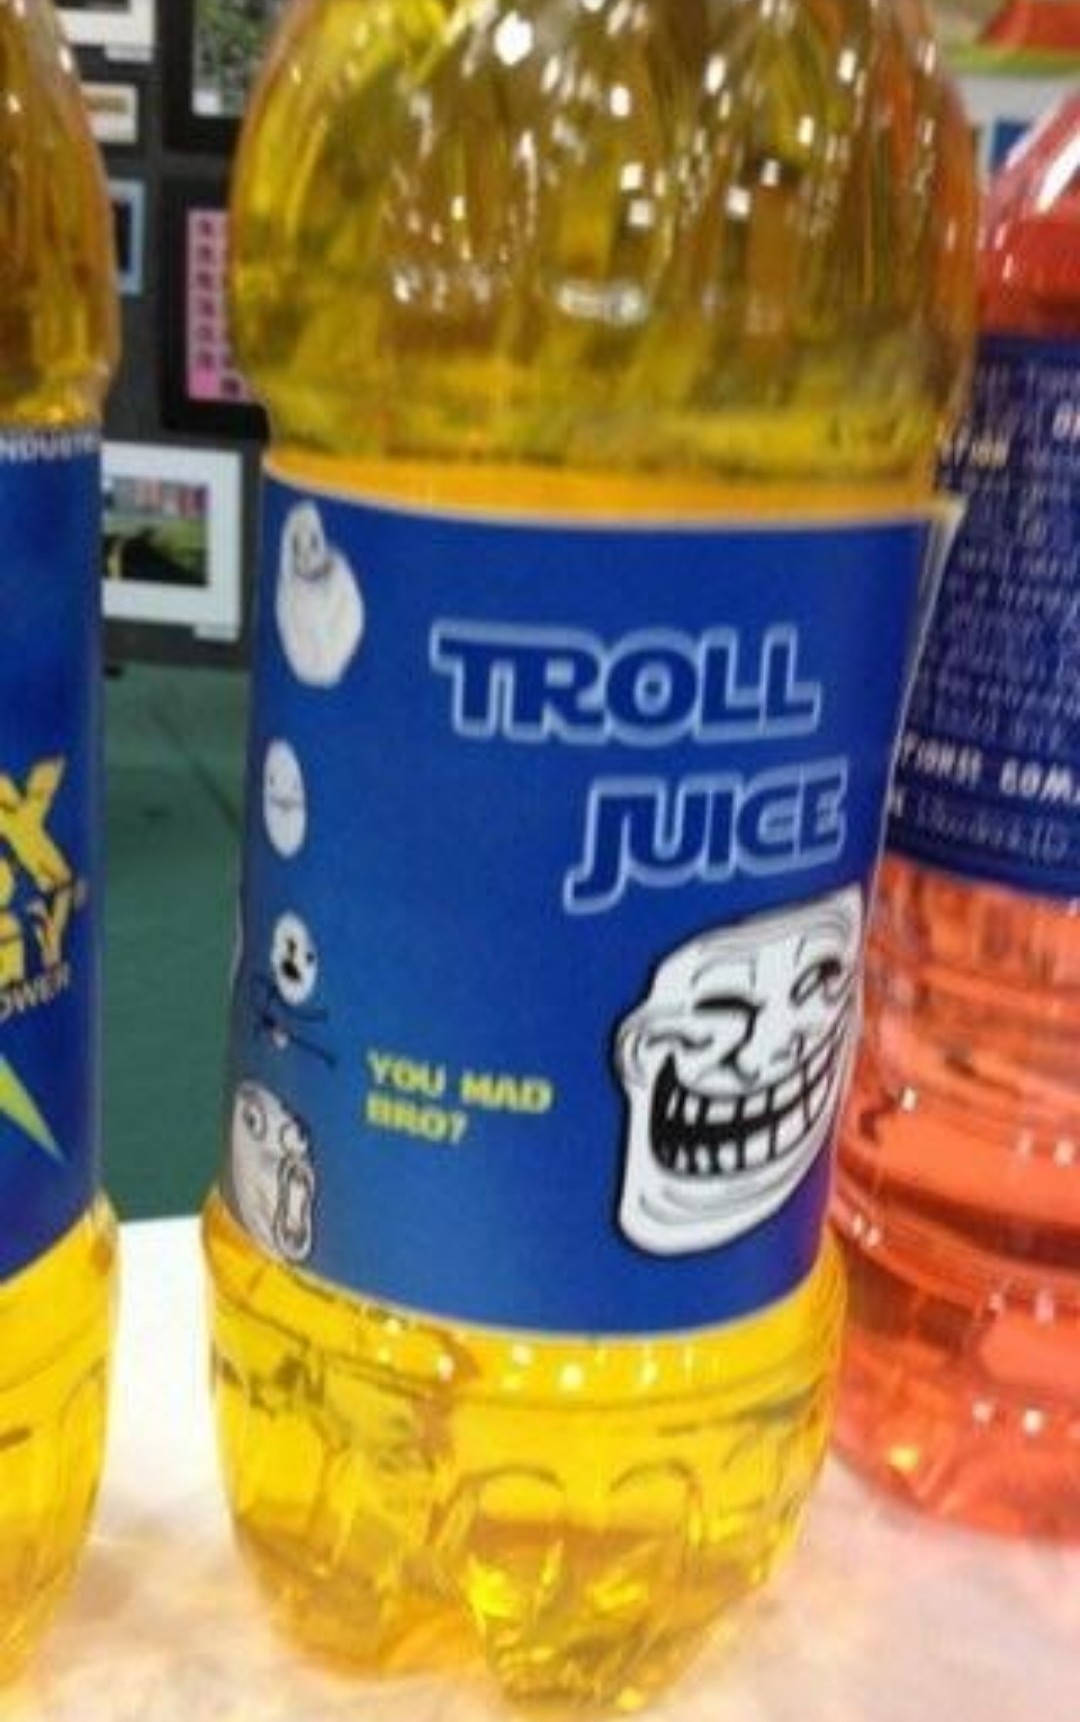 Troll juice - meme